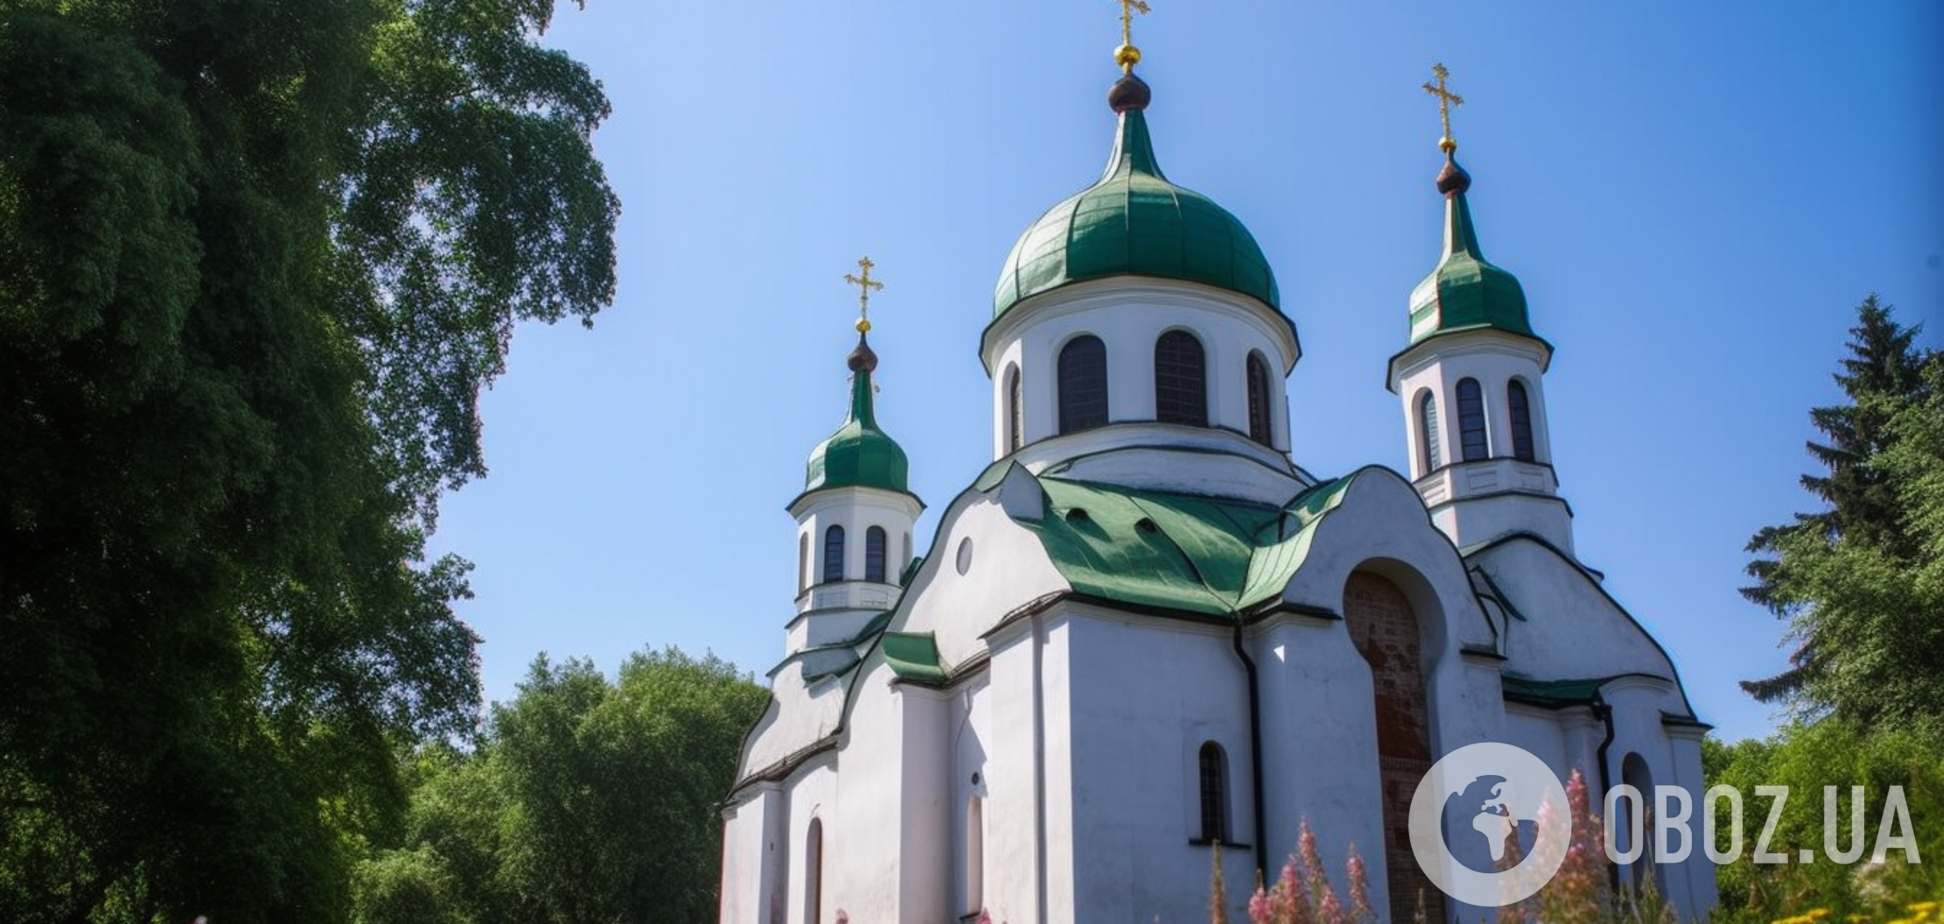 Православный календарь на август: какие праздники ждут украинцев